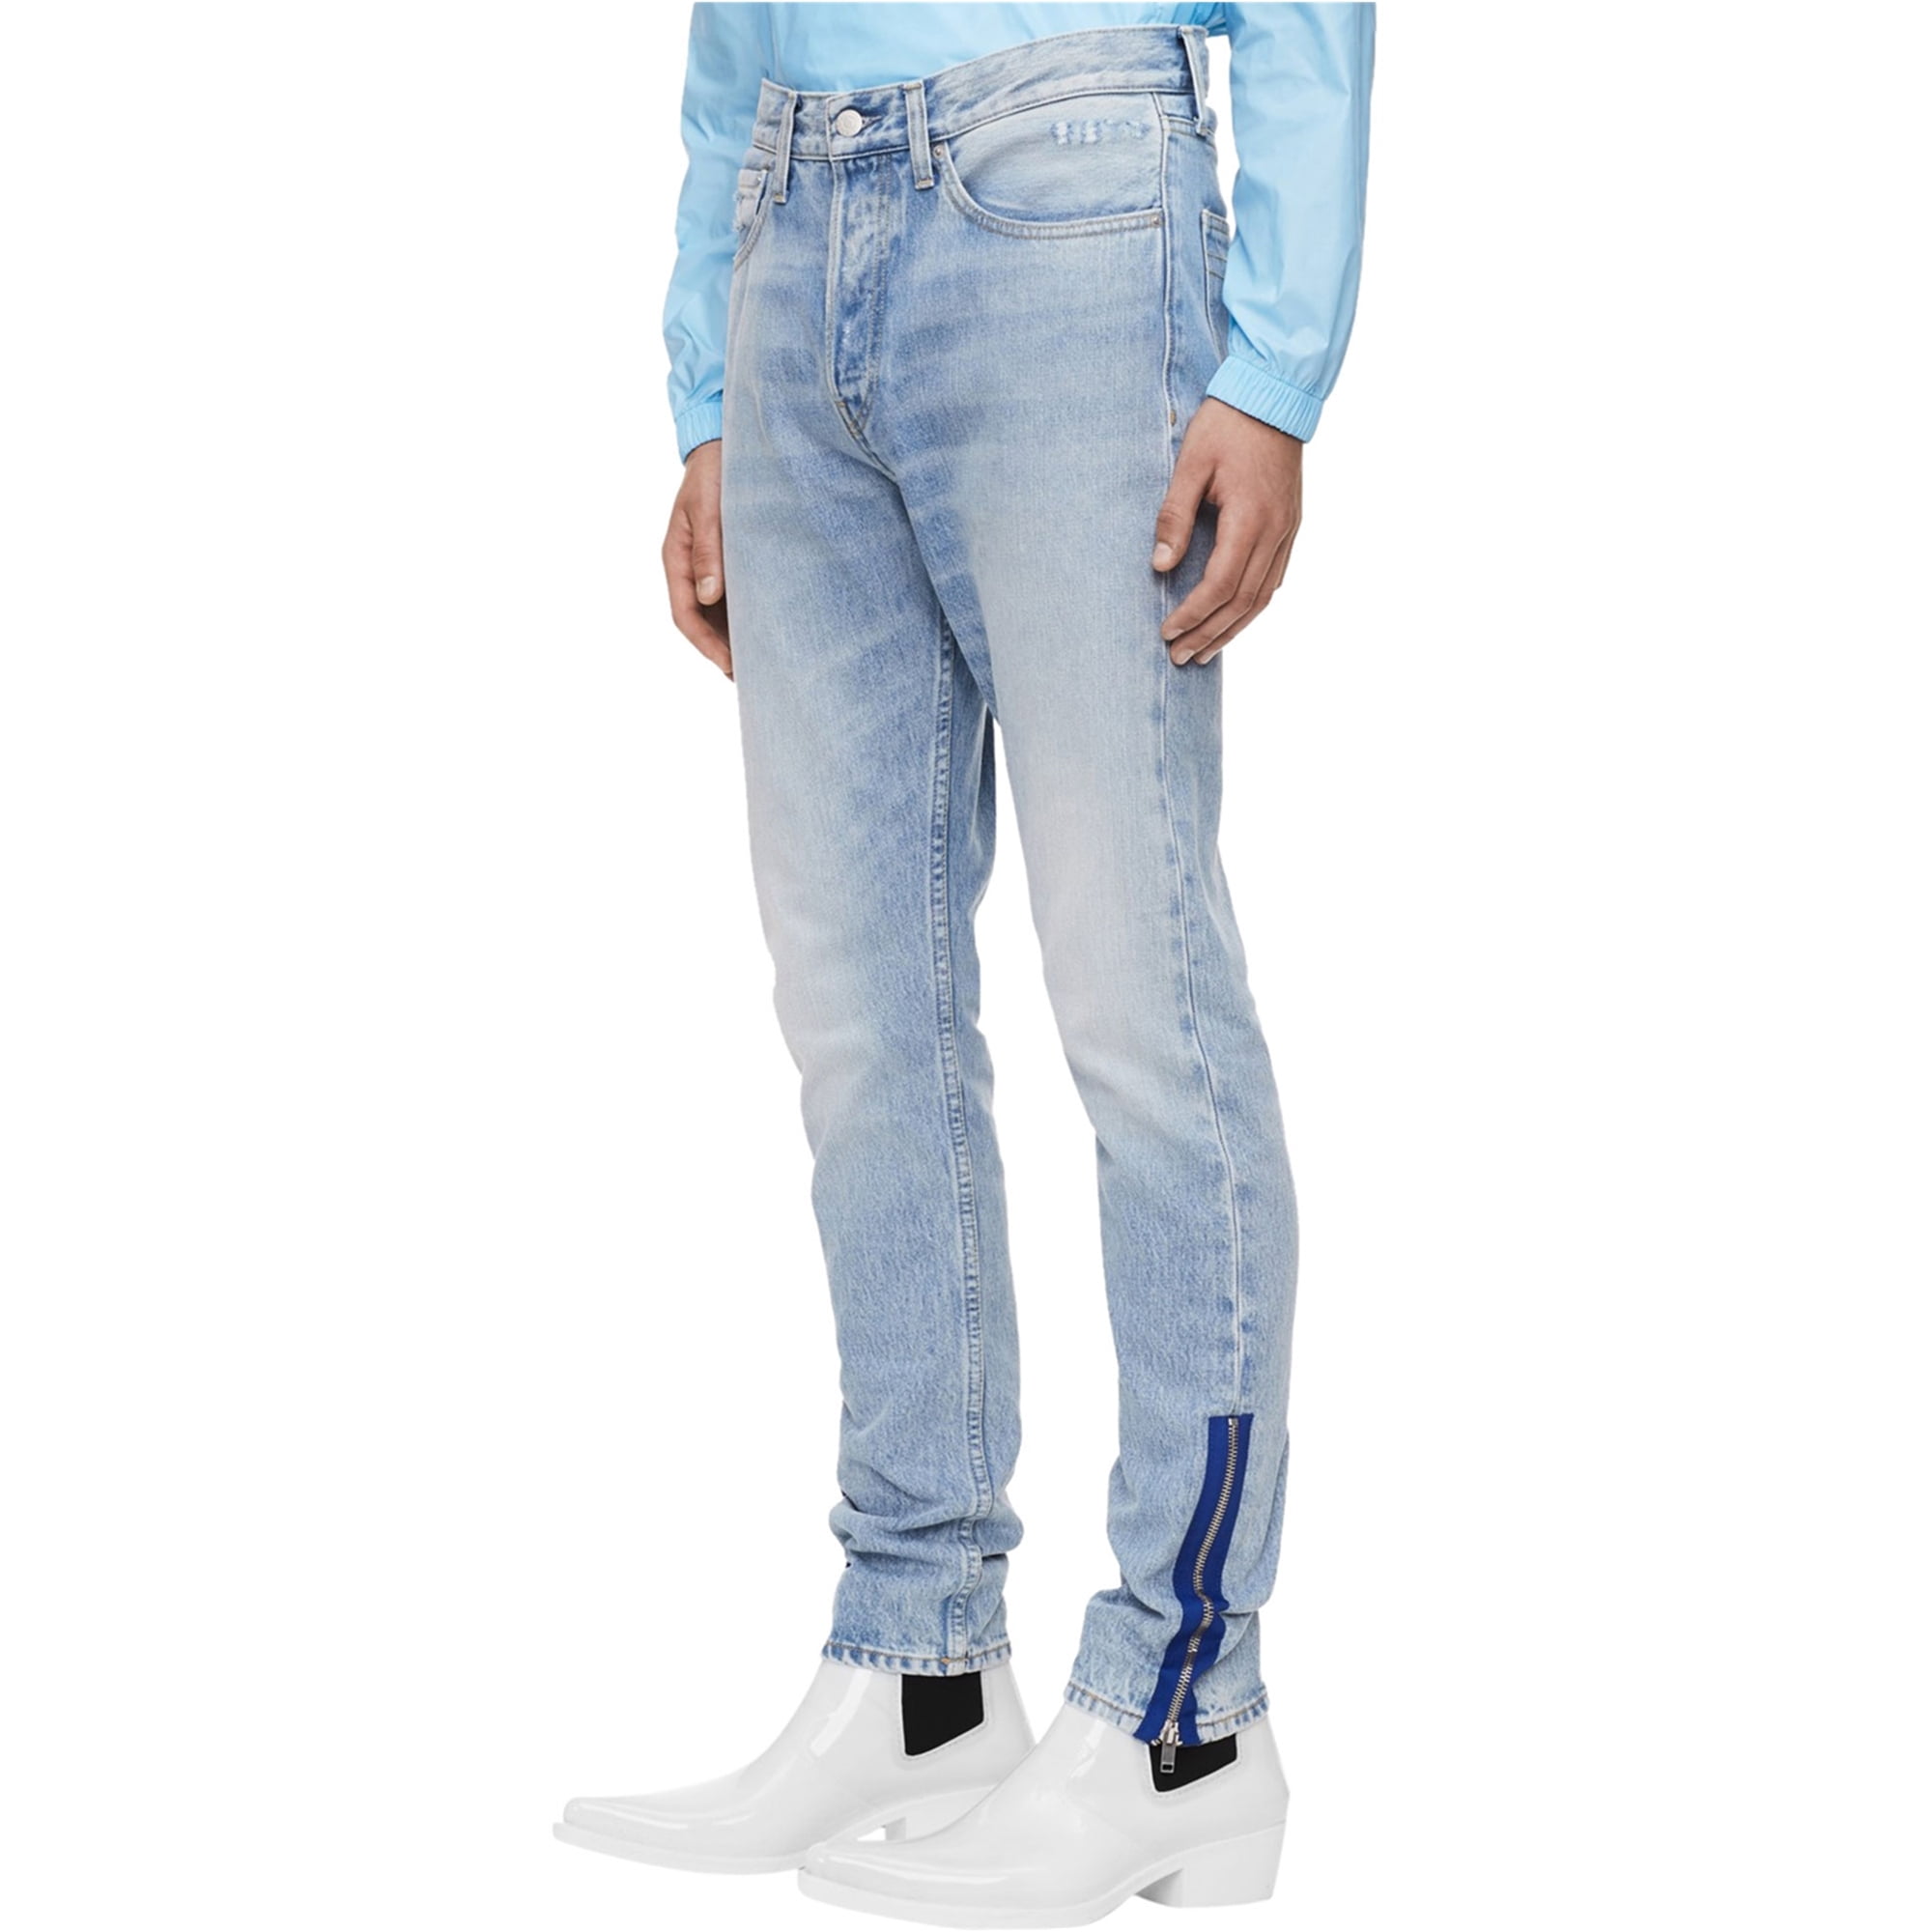 Calvin Klein Mens 015 Rigid Skinny Fit Jeans, Blue, 31W x 32L - Walmart.com